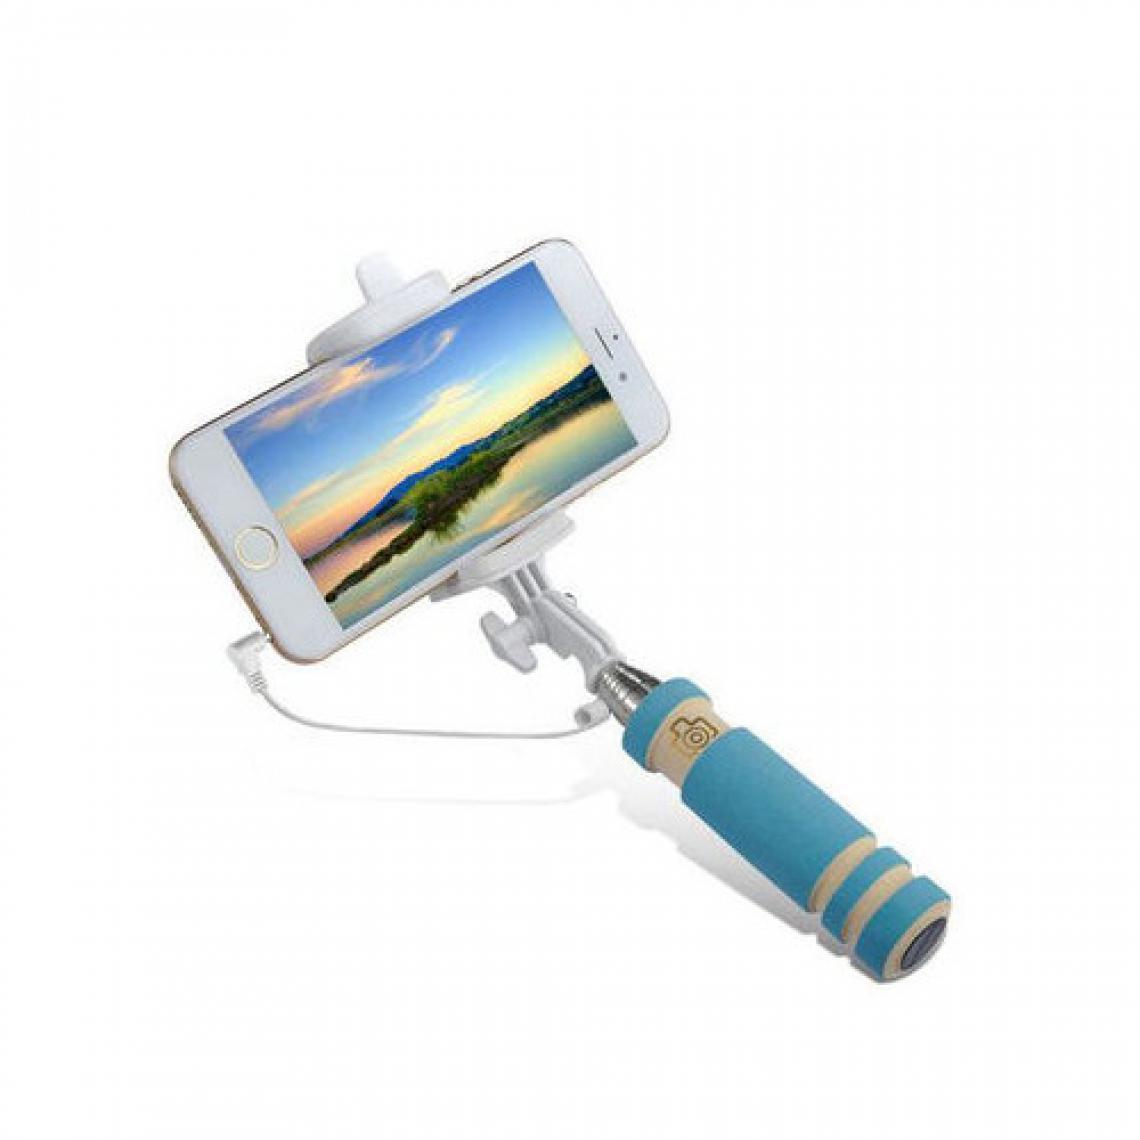 Shot - Mini Perche Selfie pour HUAWEI P30 lite XL Smartphone avec Cable Jack Selfie Stick Android IOS Reglable Bouton Photo (BLEU) - Autres accessoires smartphone